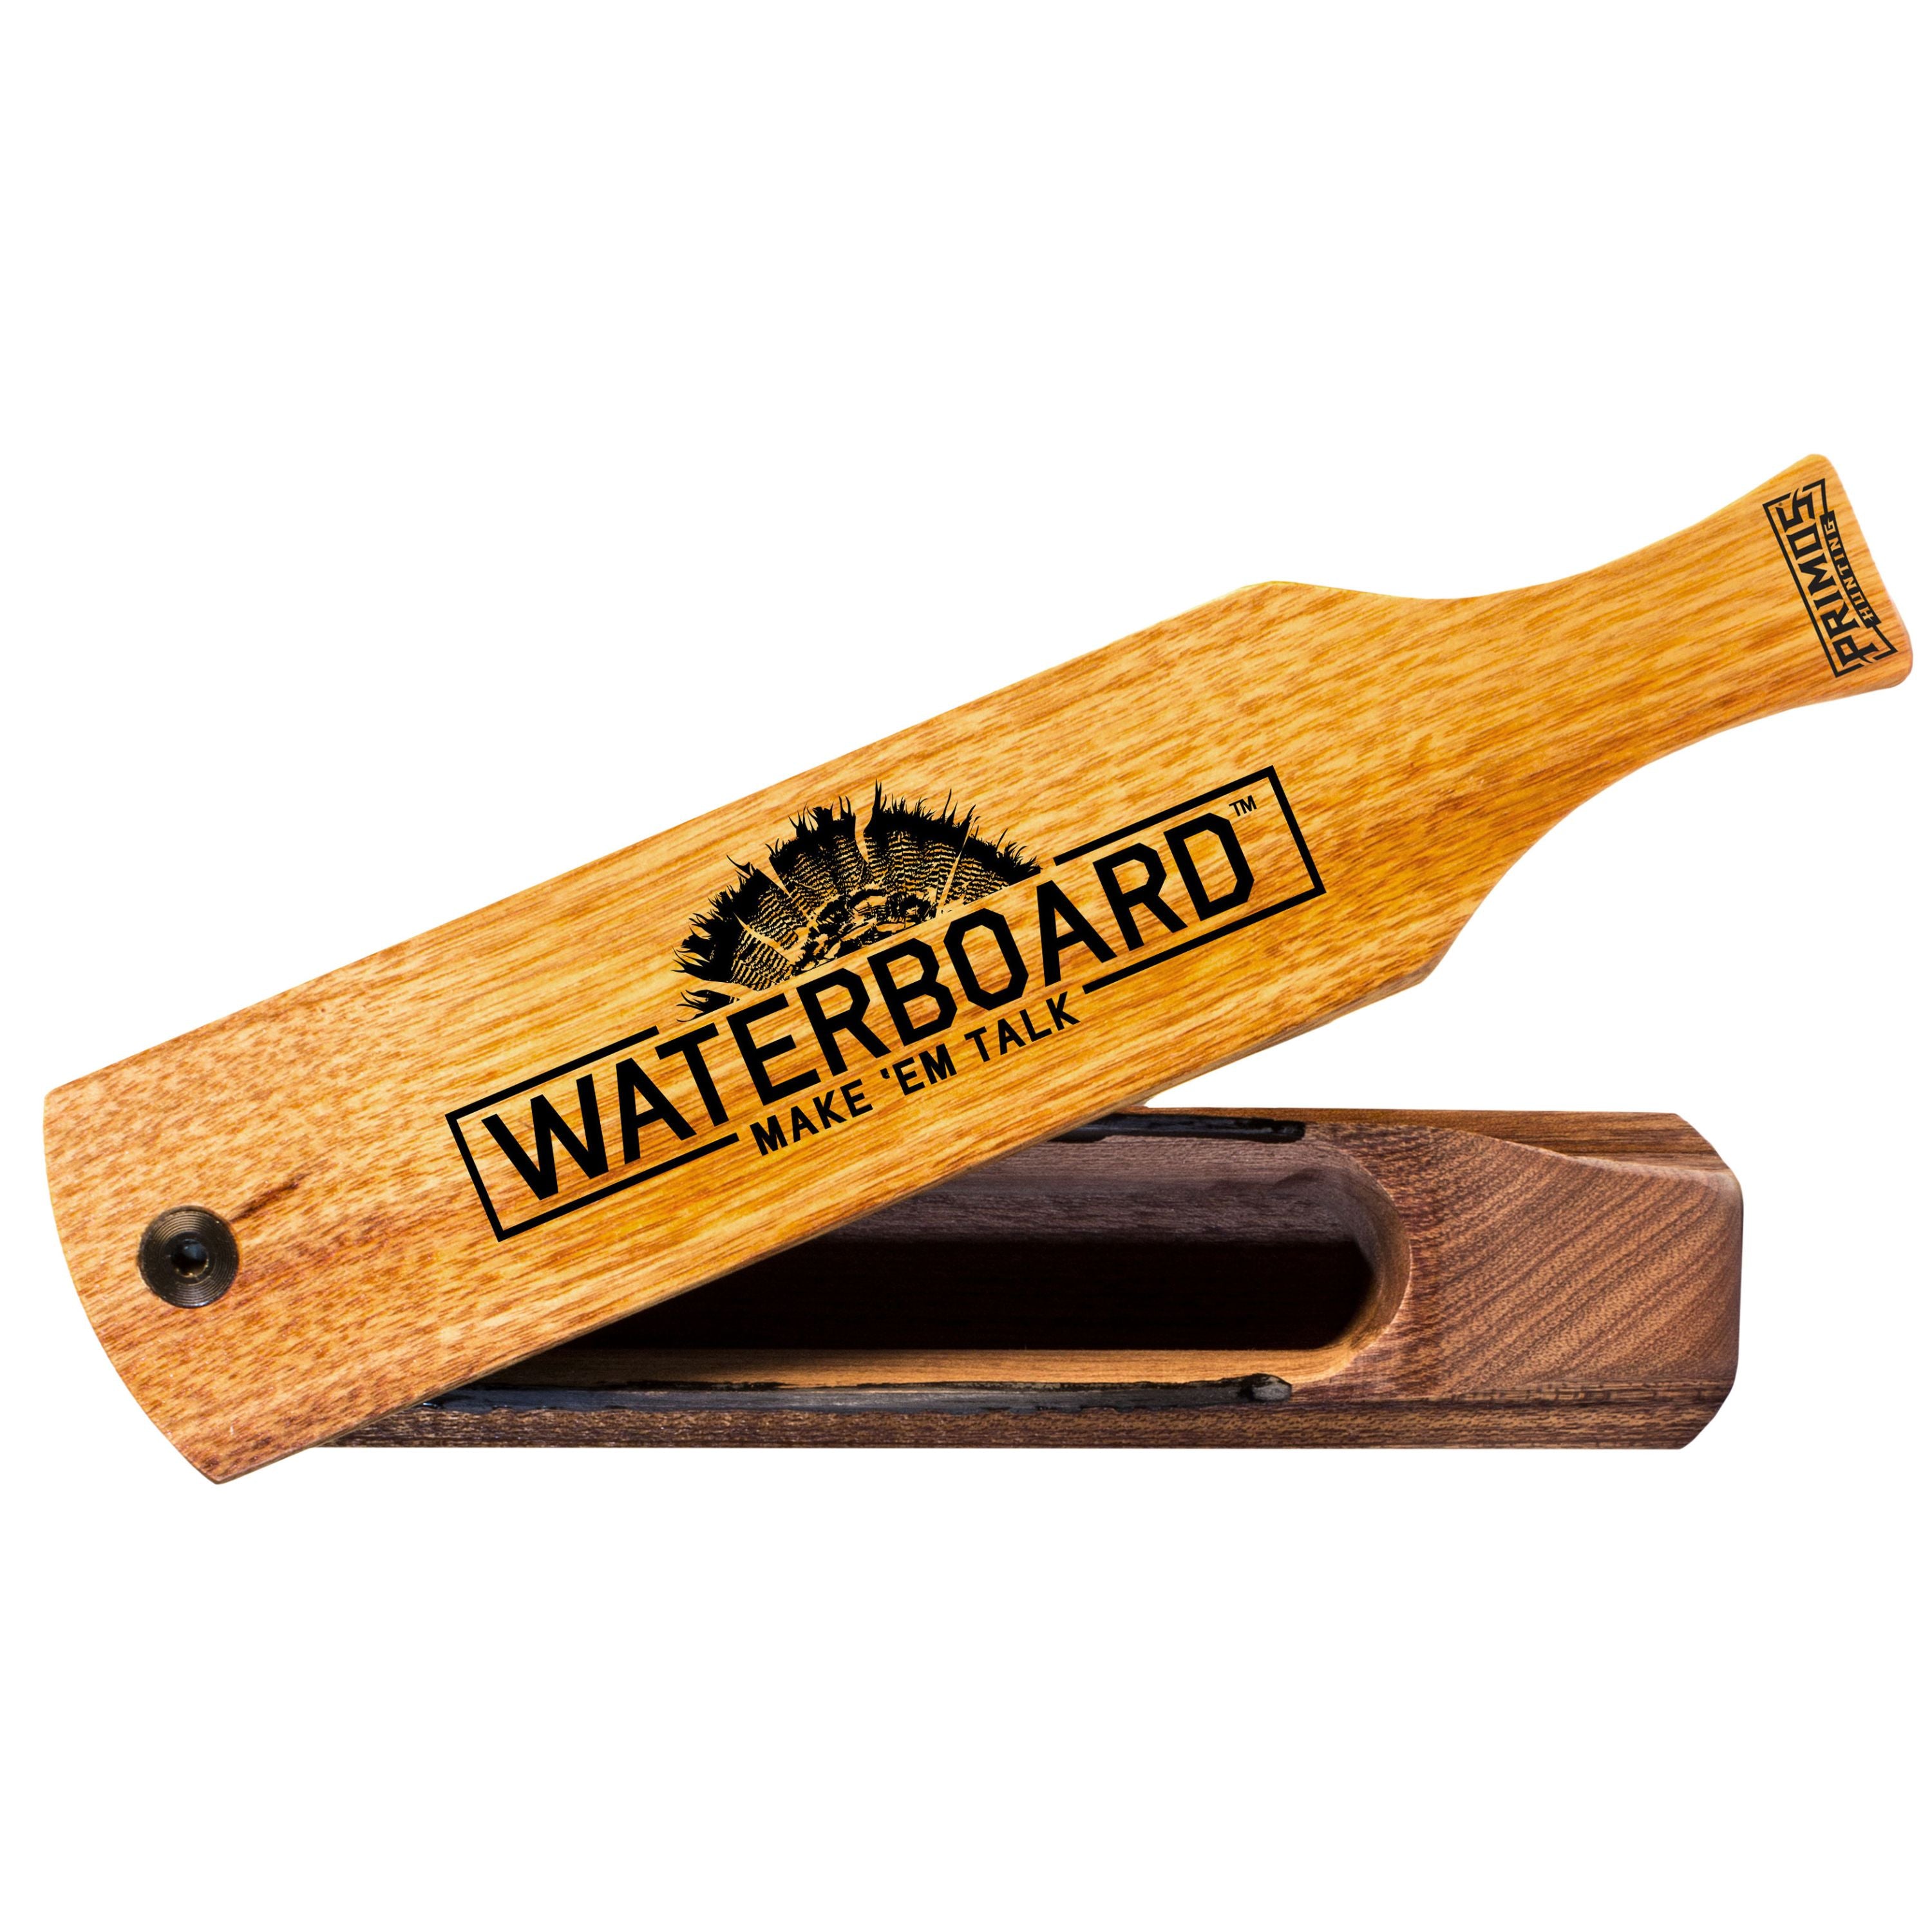 Appeau à boîtier pour dindon "Waterboard"